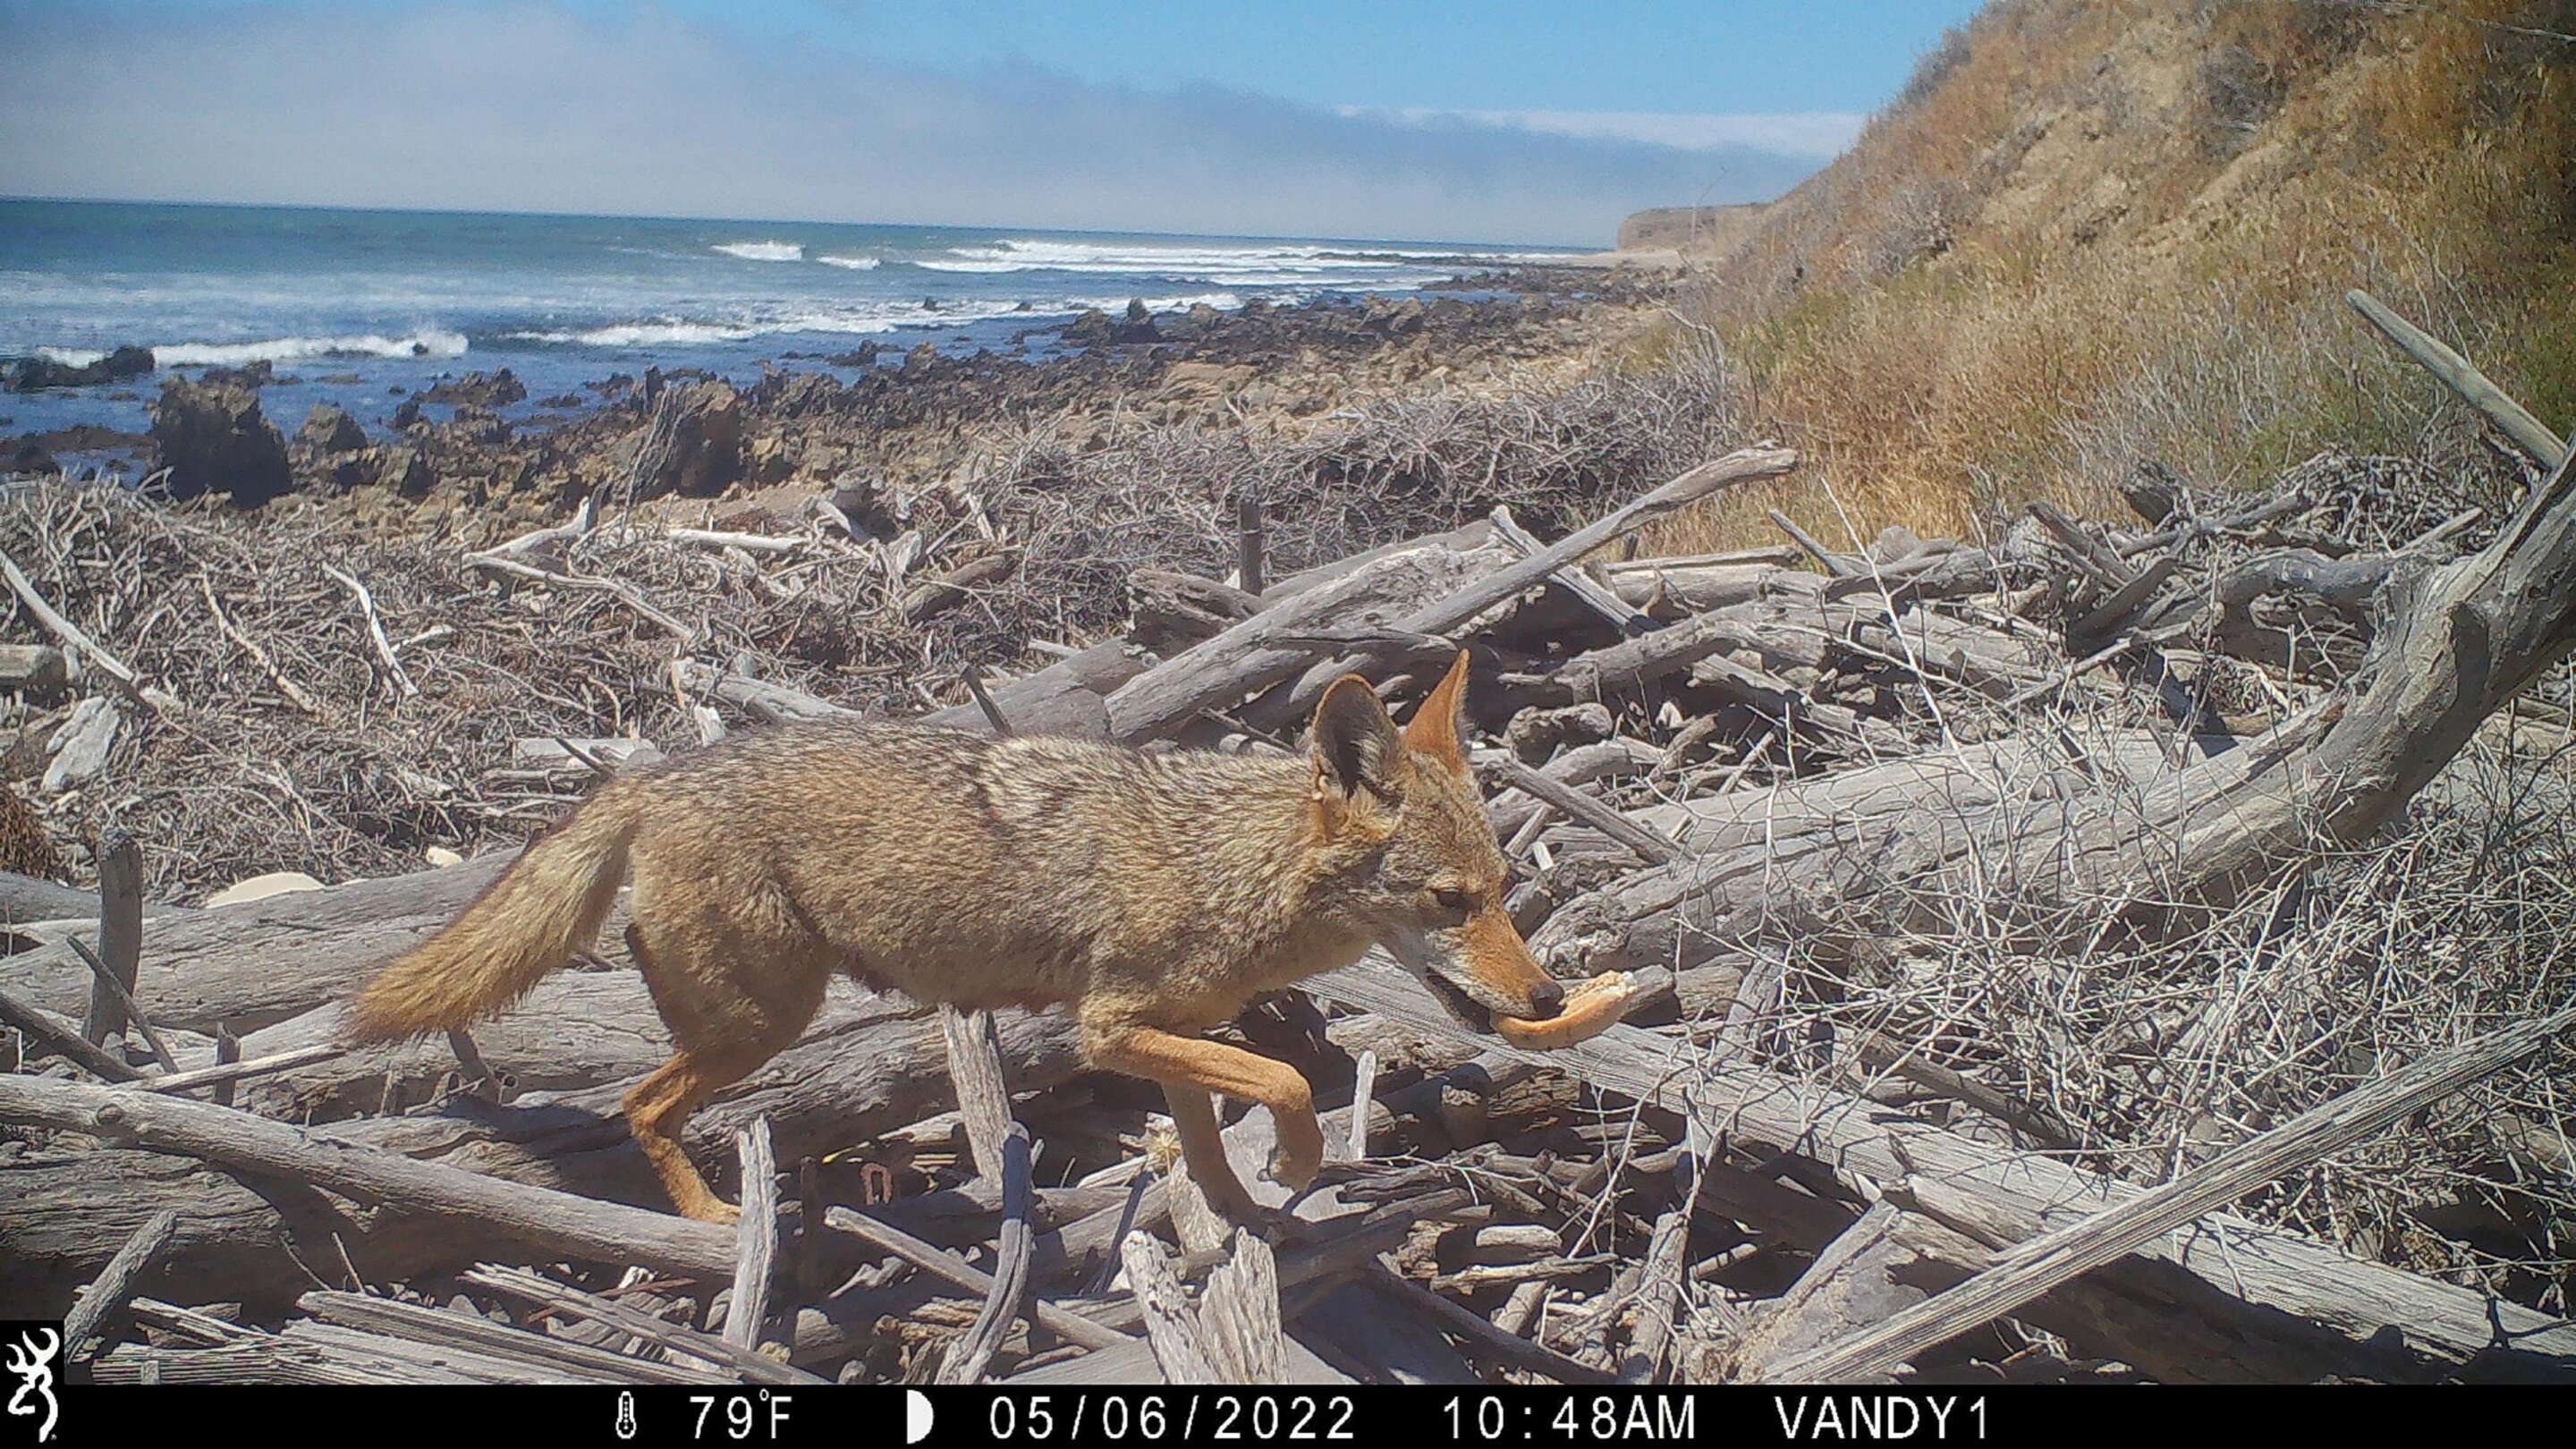 Entlang der geschützten kalifornischen Küste installierte Bewegungssensorkameras zeigen die Auswirkungen von Kojoten auf Gezeitenlebensräume